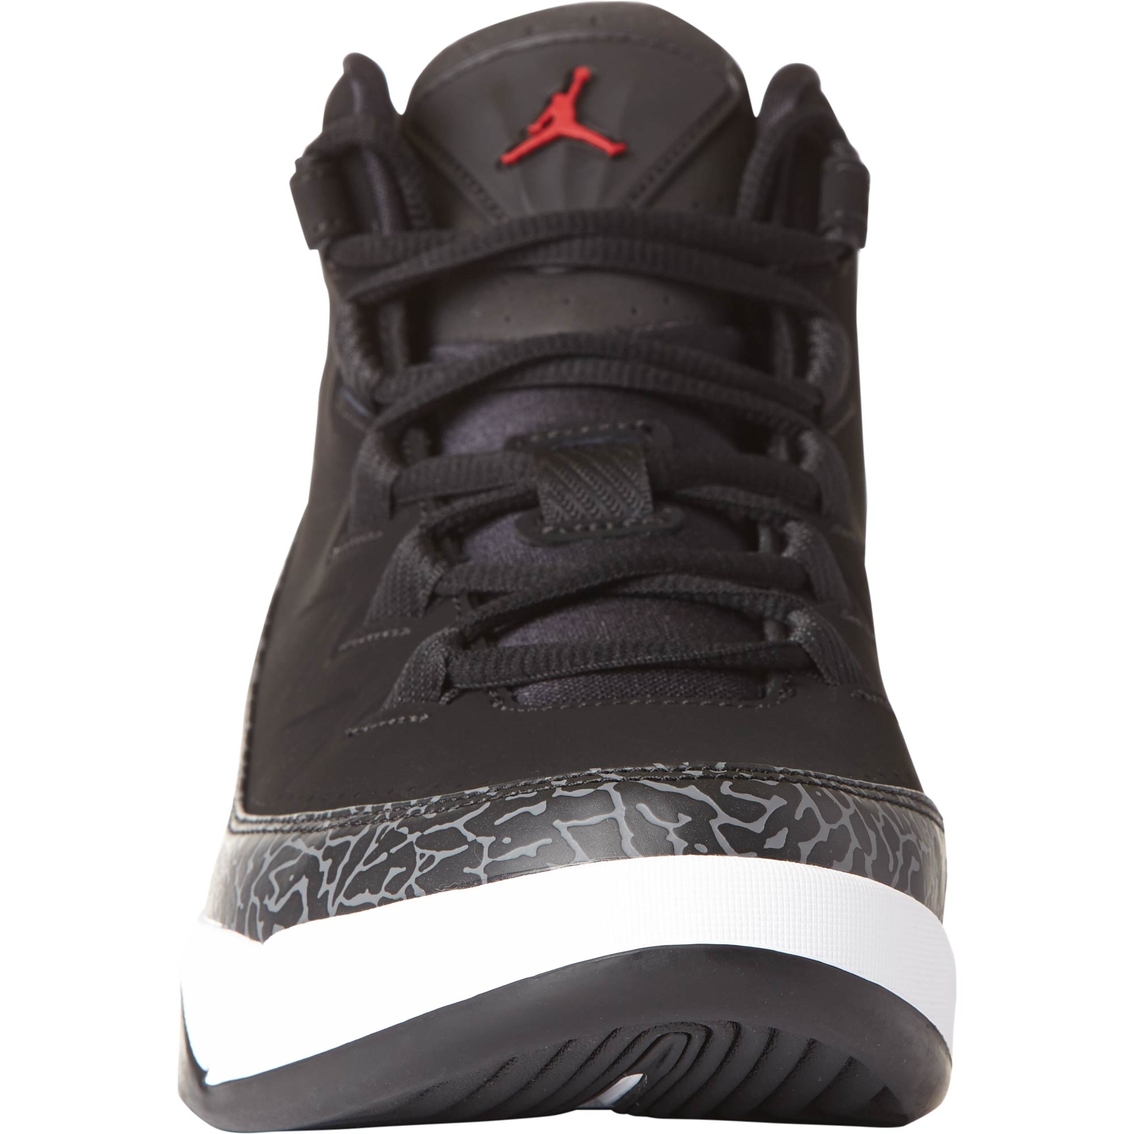 Jordan Air Deluxe Men's Basketball Shoes - Image 2 of 5